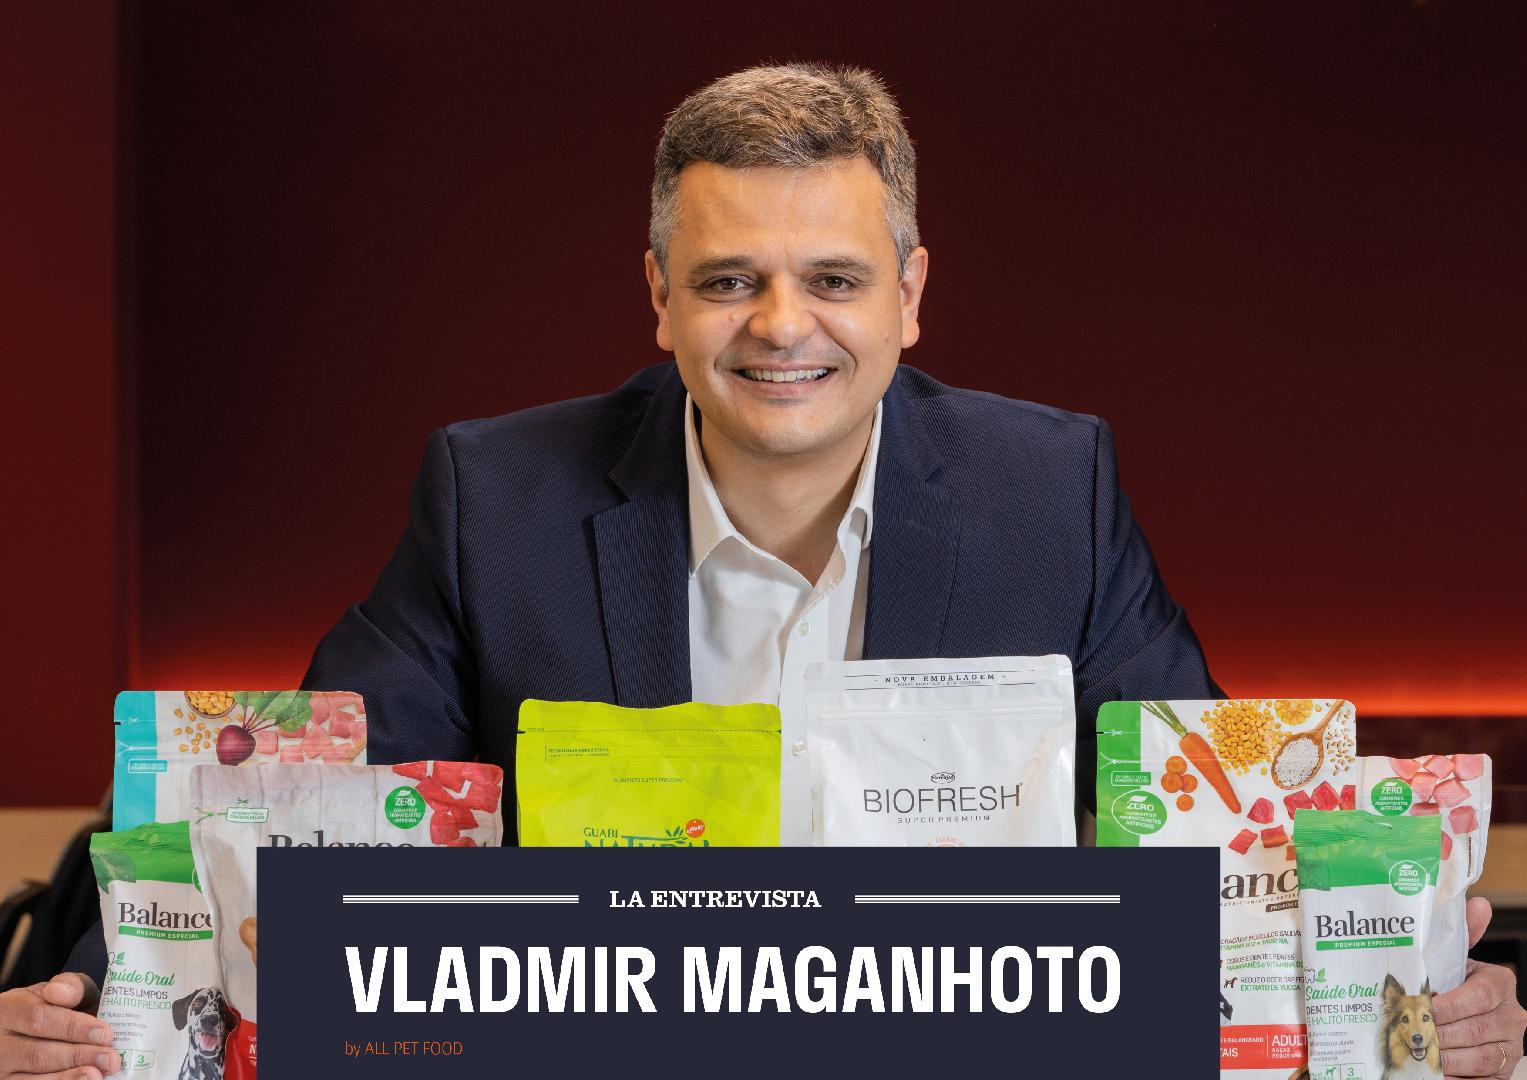 La Entrevista - Vladmir Maganhoto